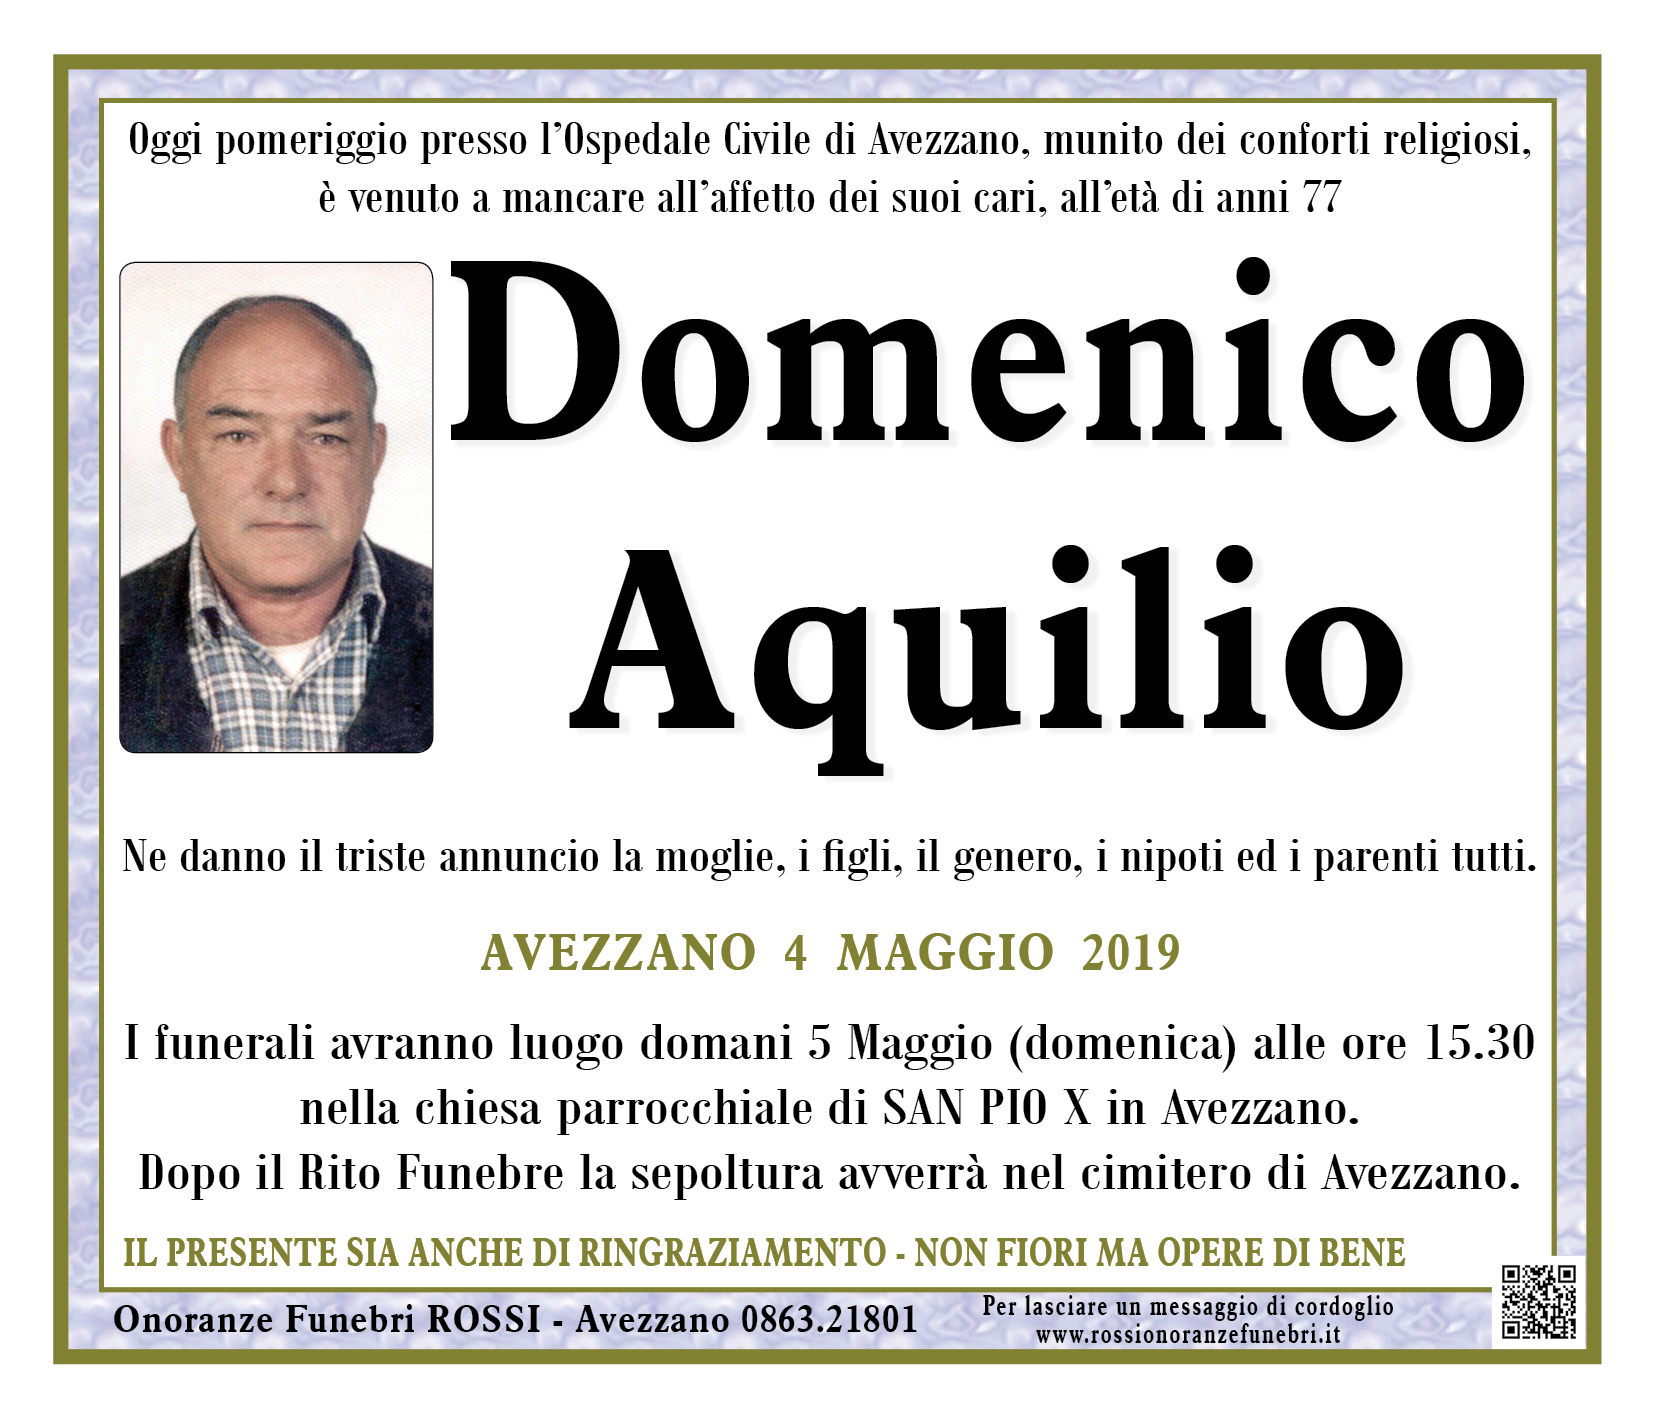 Domenico Aquilio